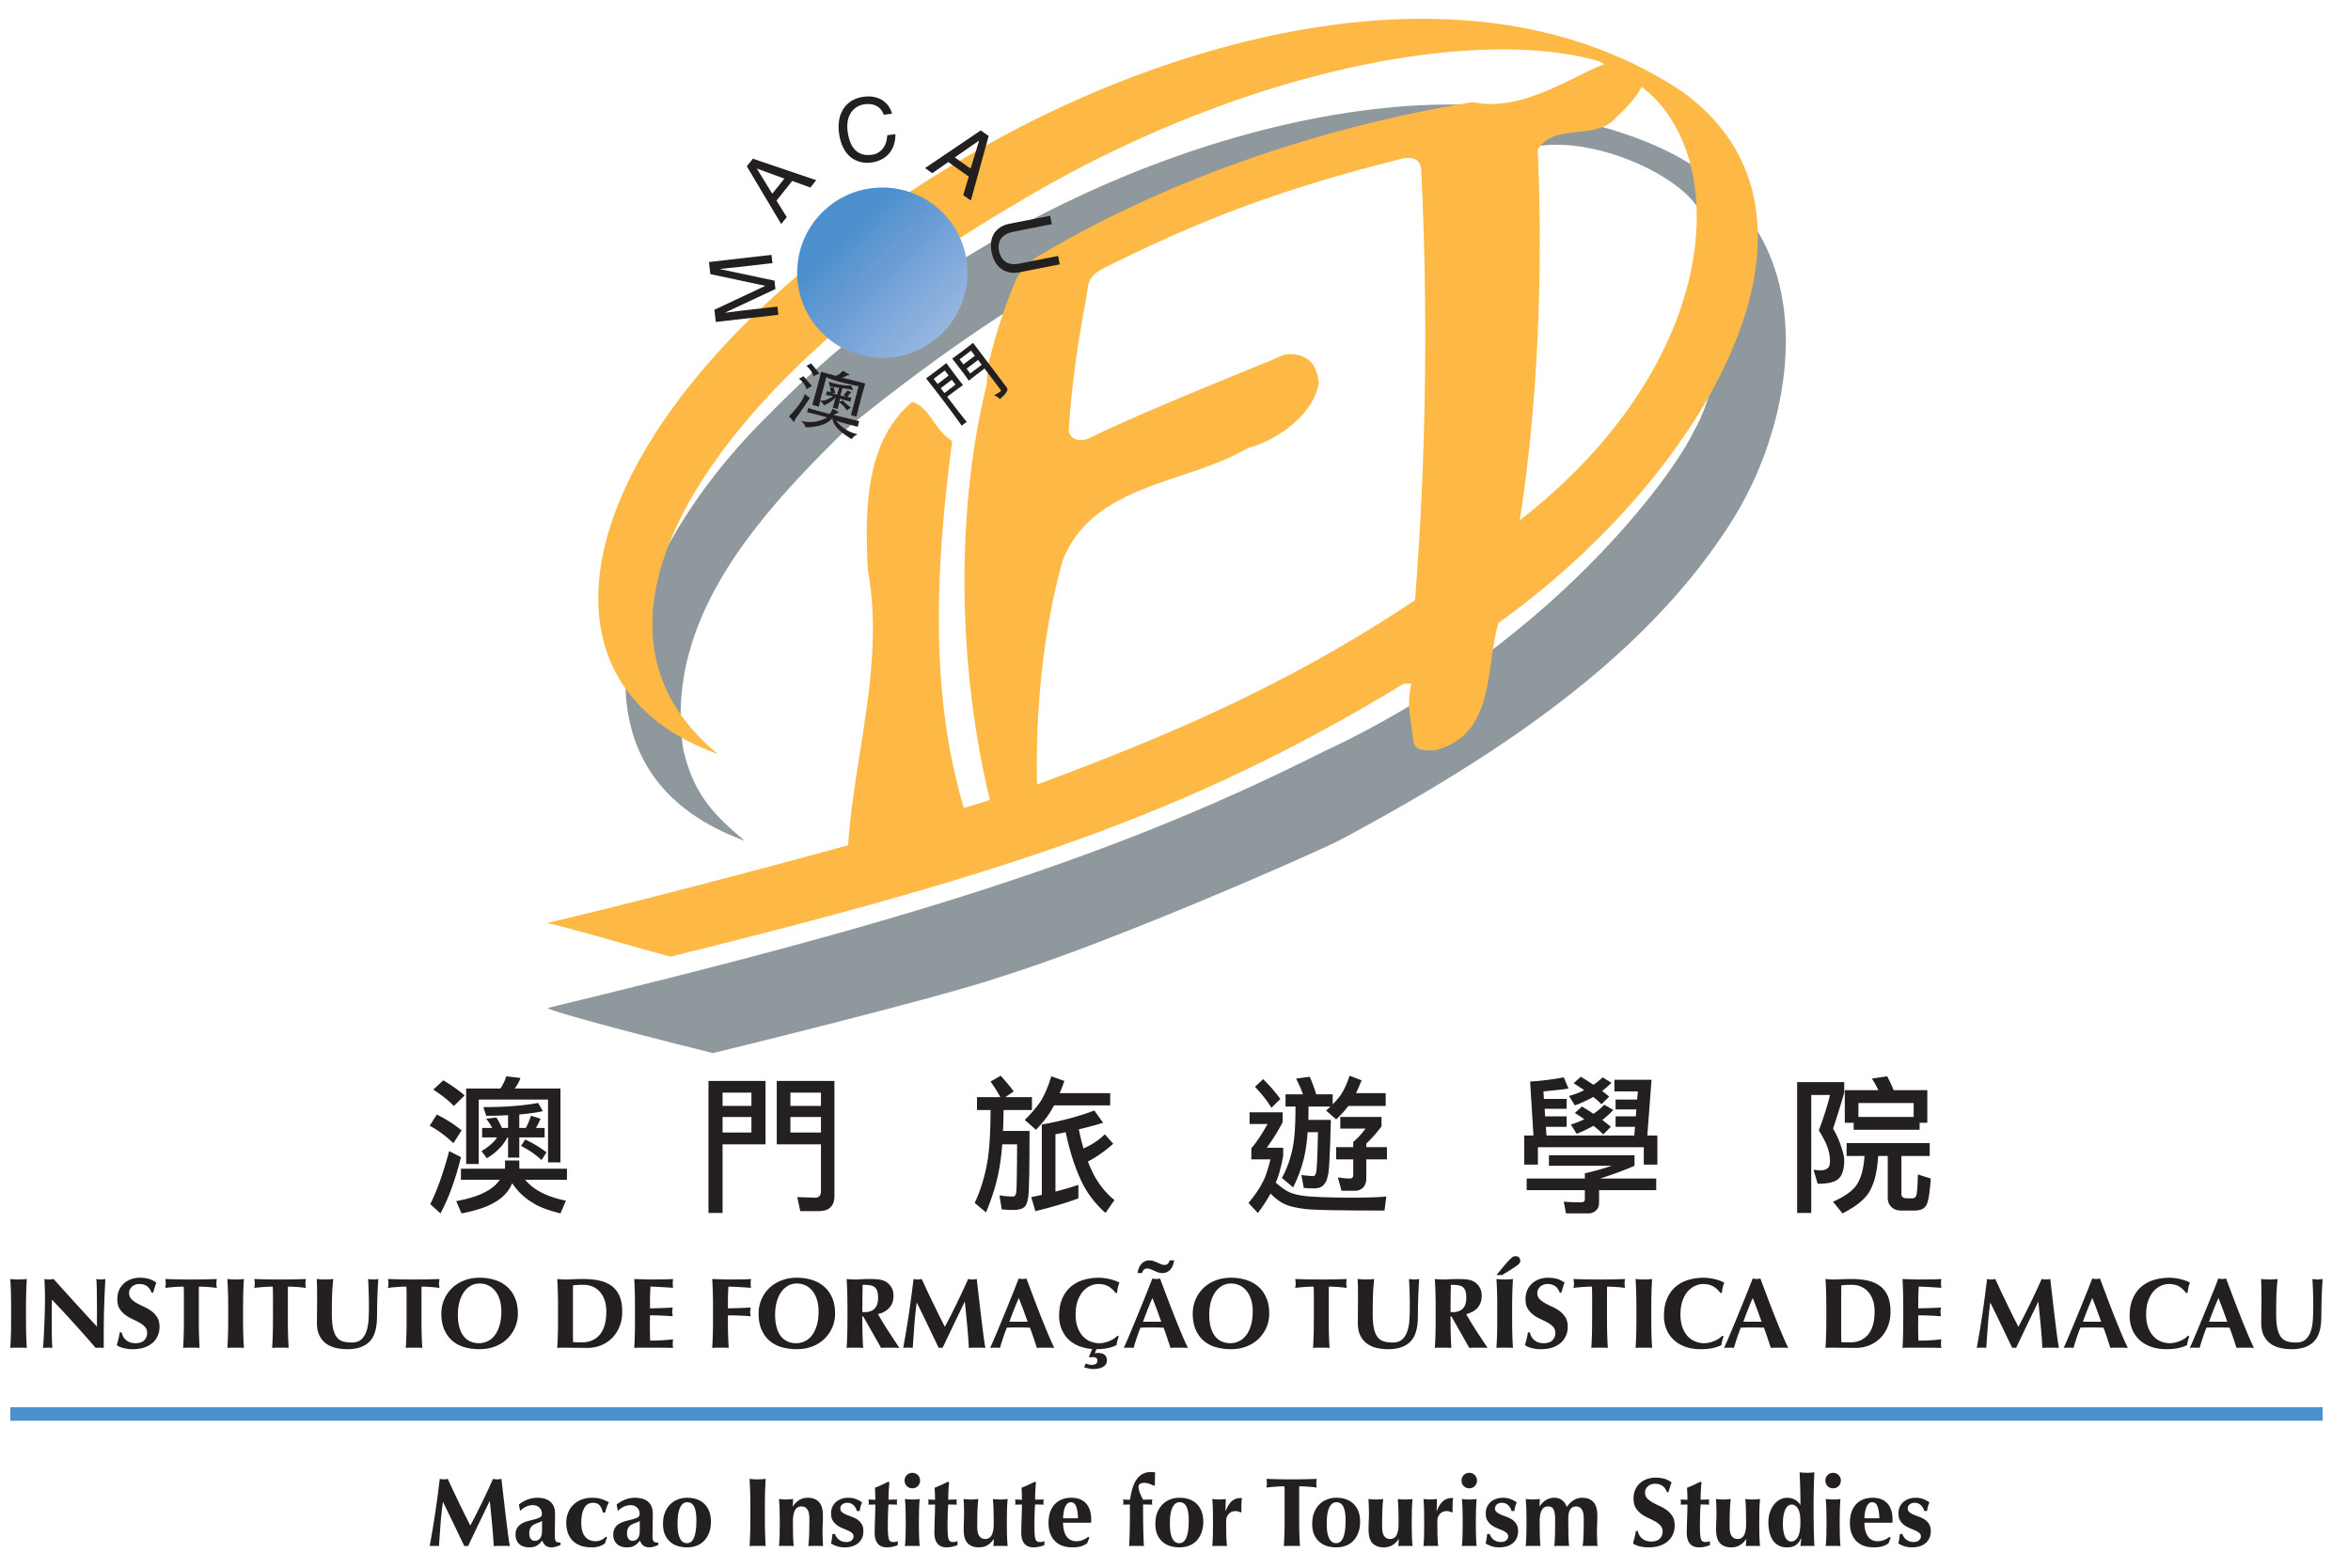 Instituto de Formação Turística de Macau